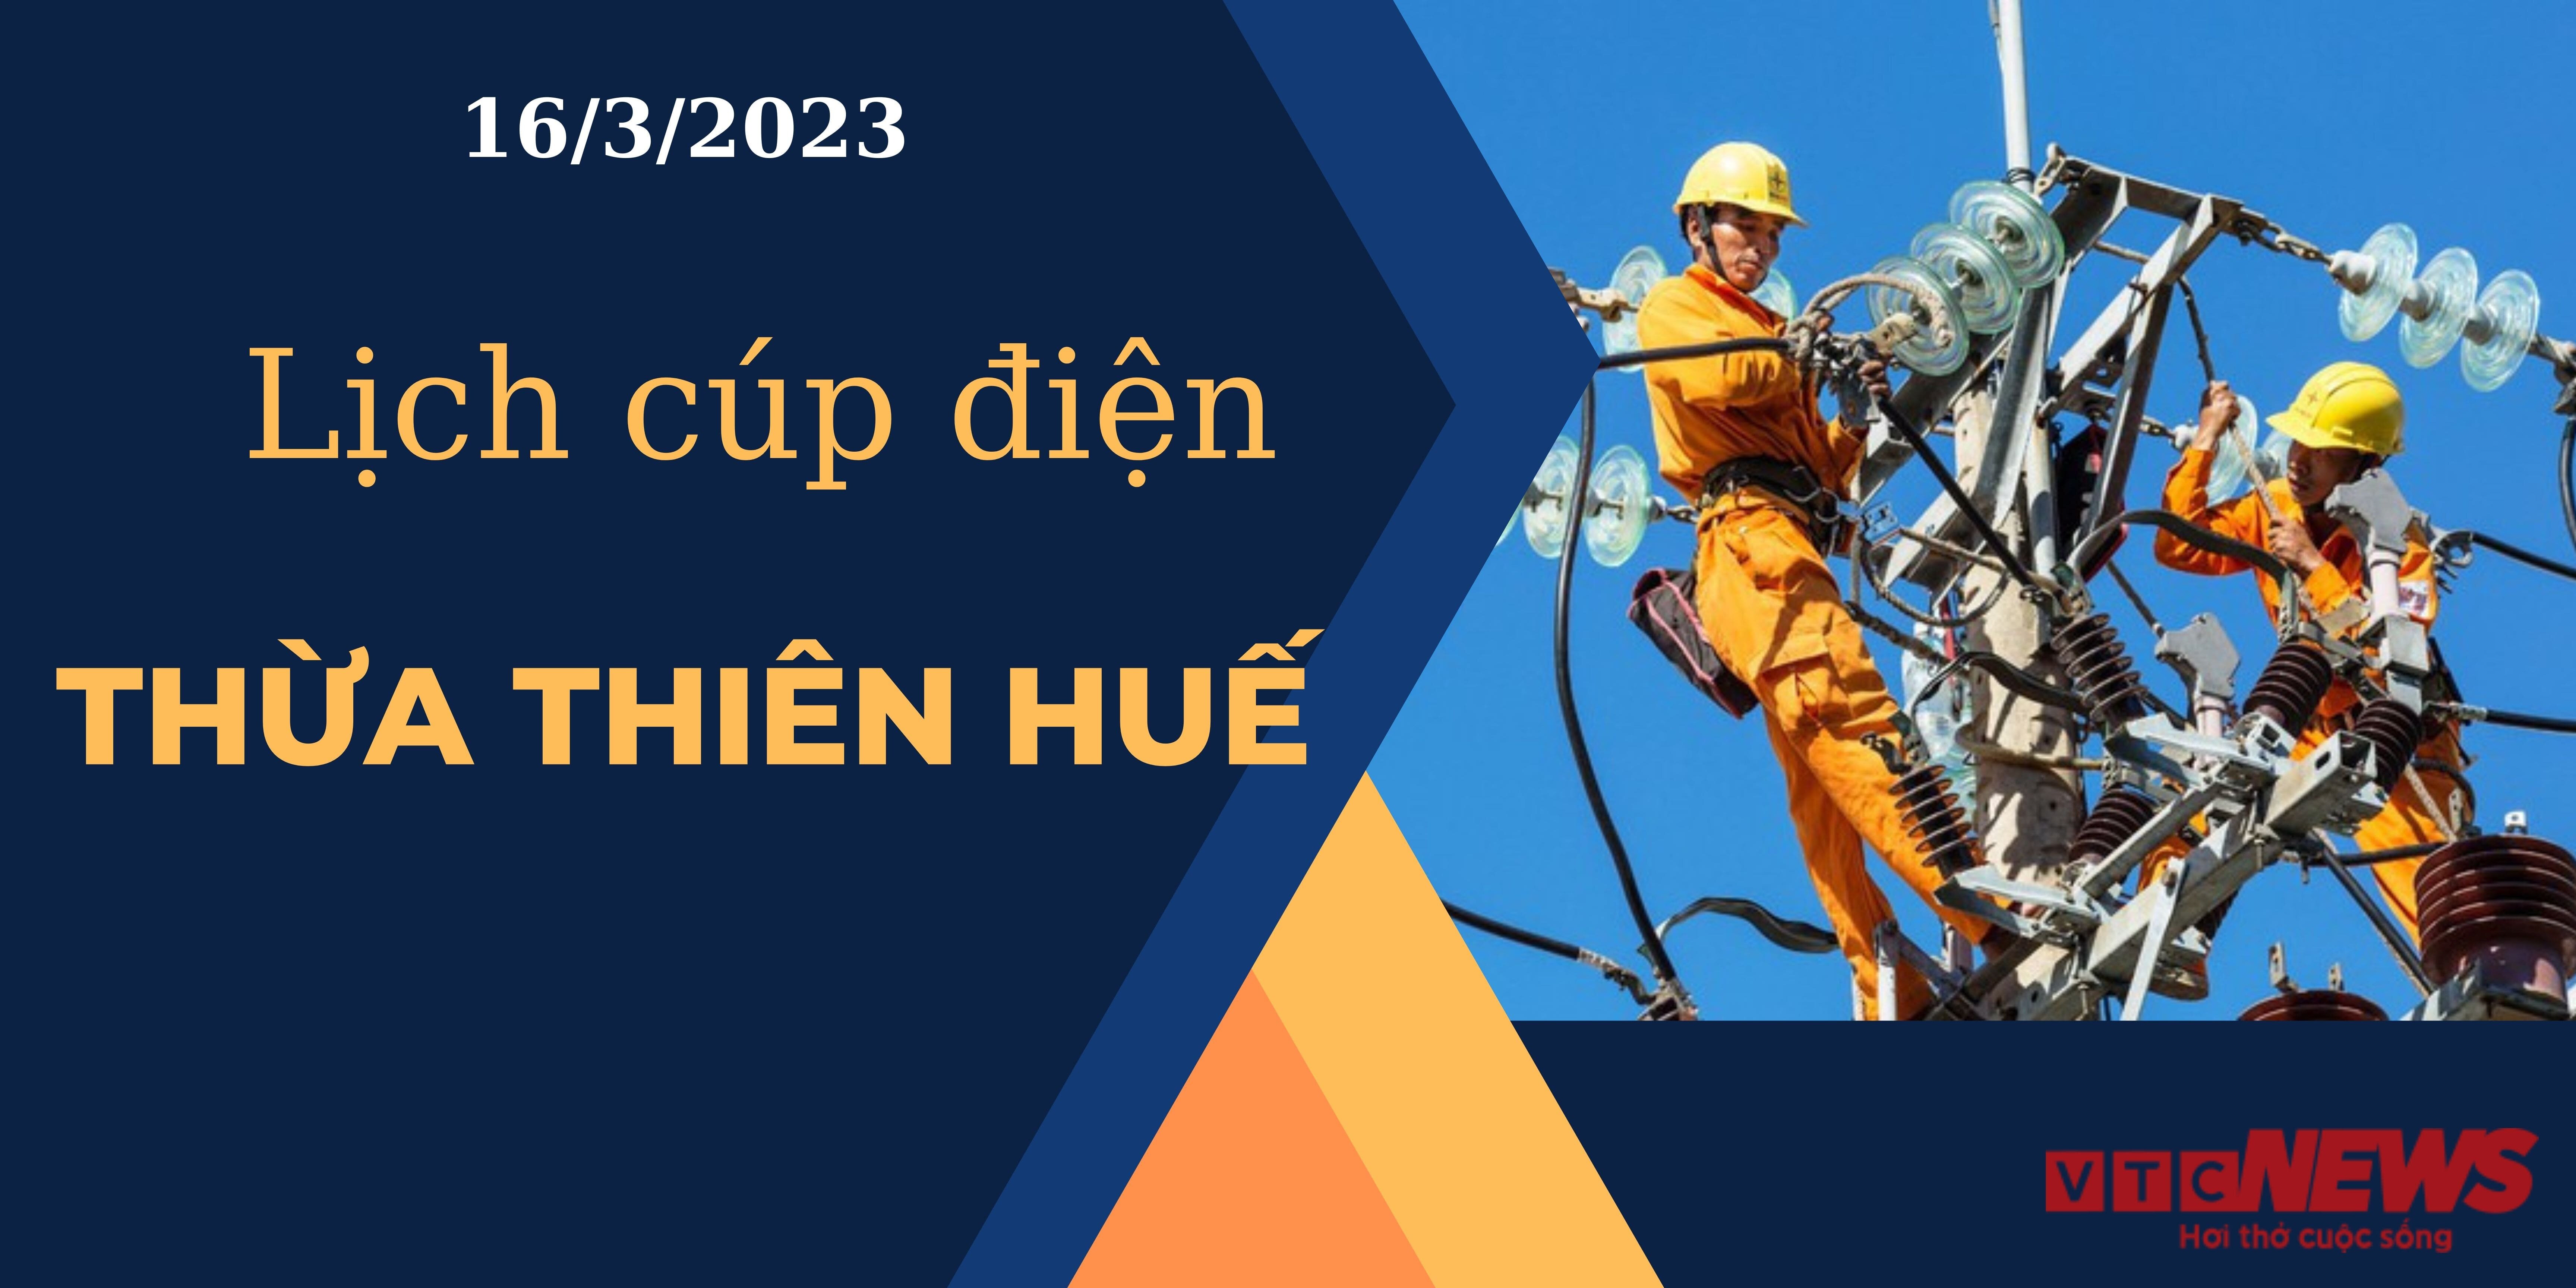 Lịch cúp điện hôm nay tại  Thừa Thiên Huế ngày 16/3/2023 - 1